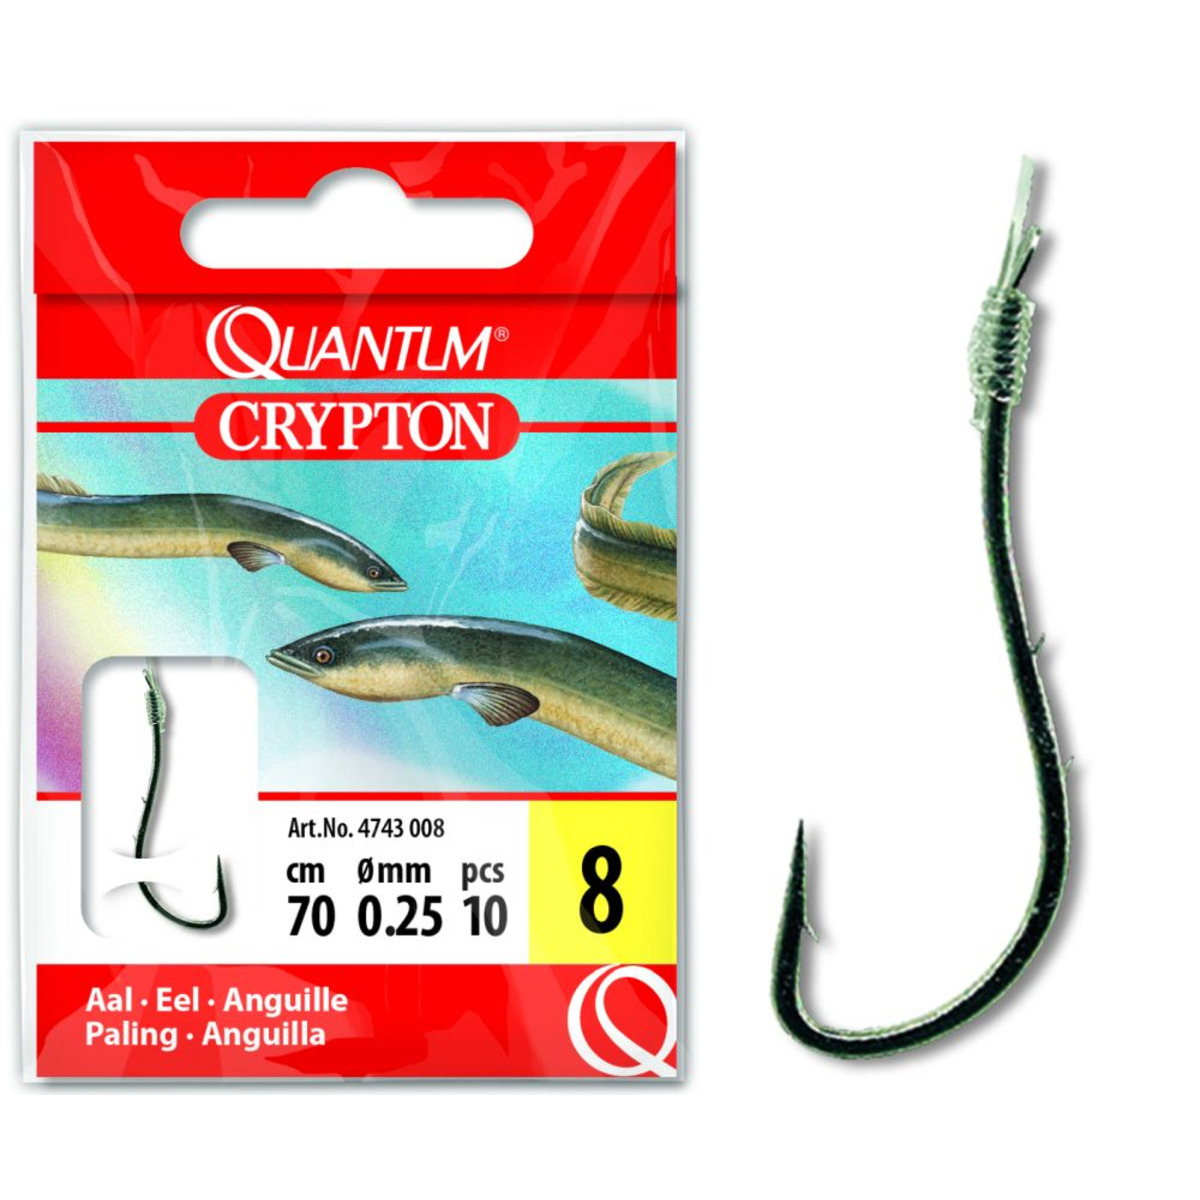 Quantum Crypton Eel Hook-to-nylon - 1/0